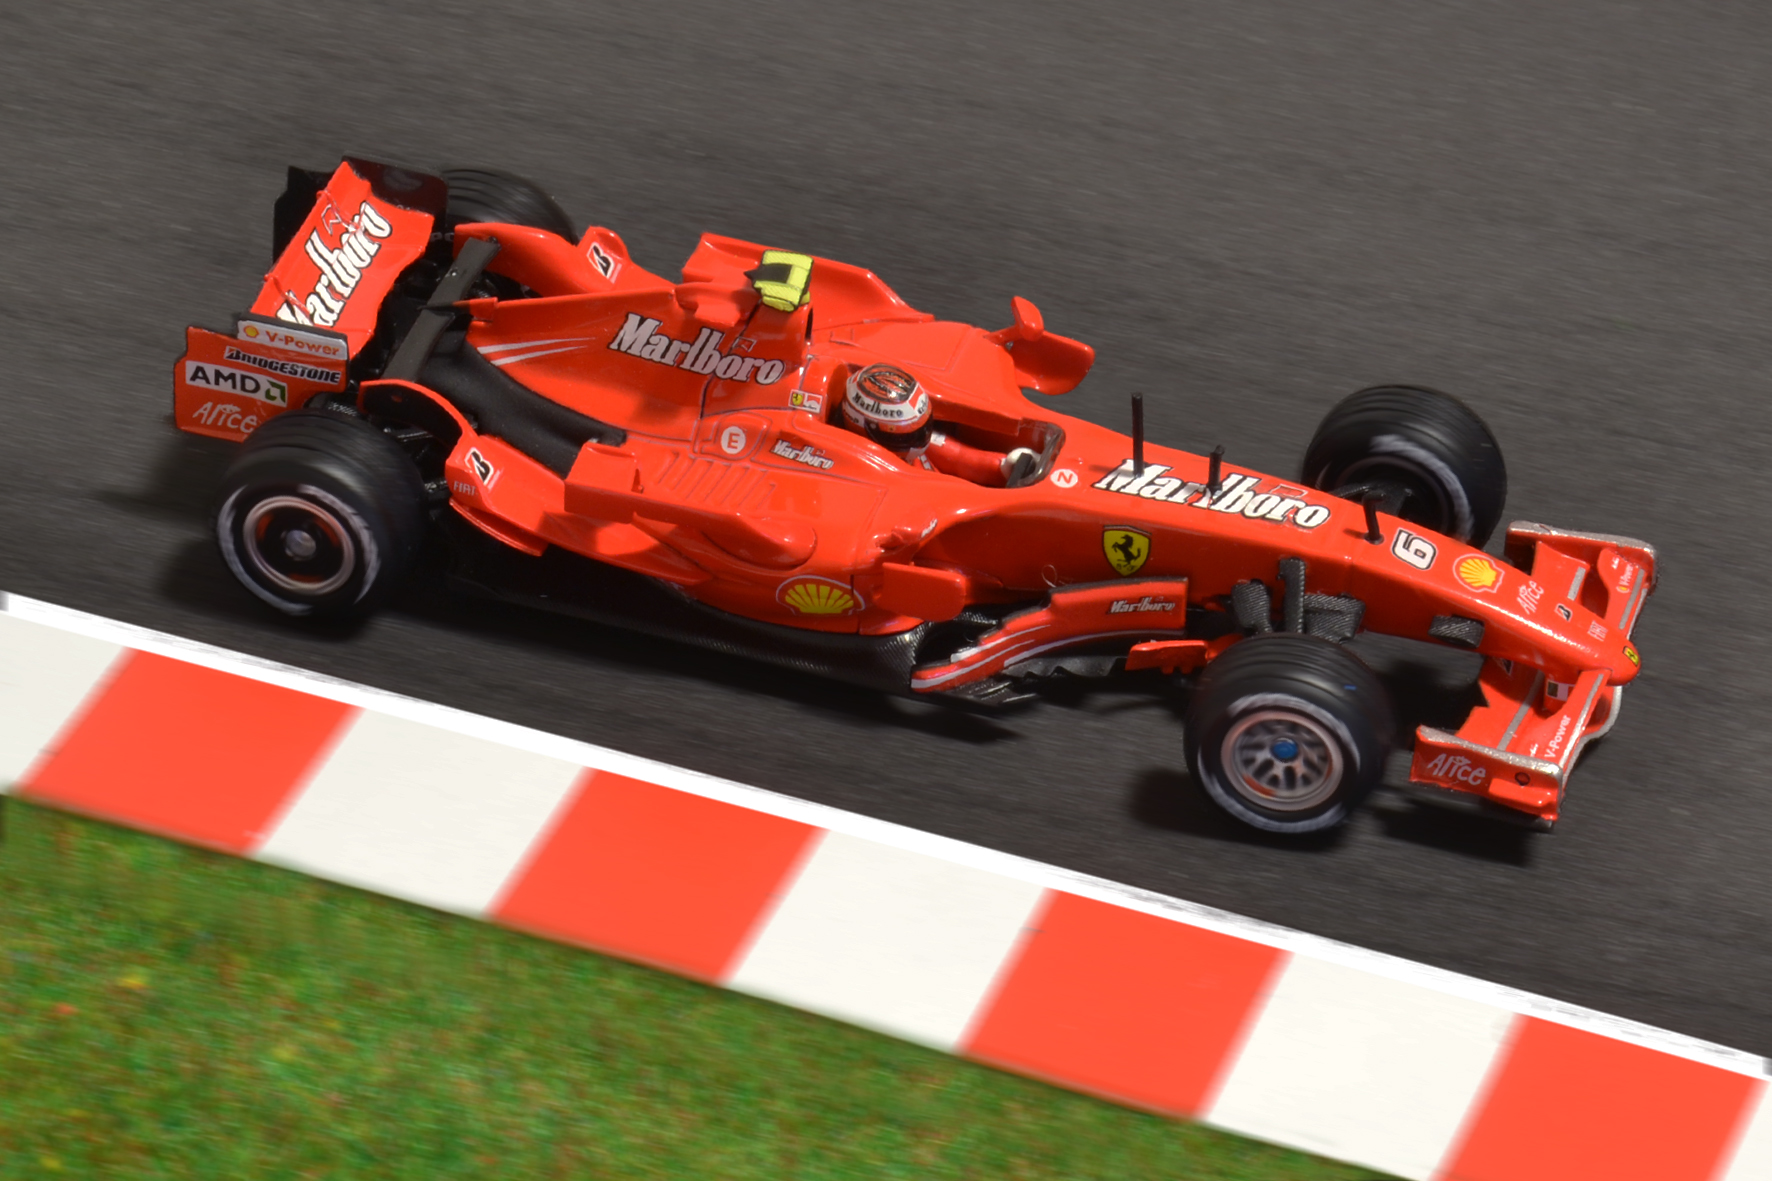 Ferrari F2007 Kimi Räikkönen 2007 - Hot Wheels 1:43